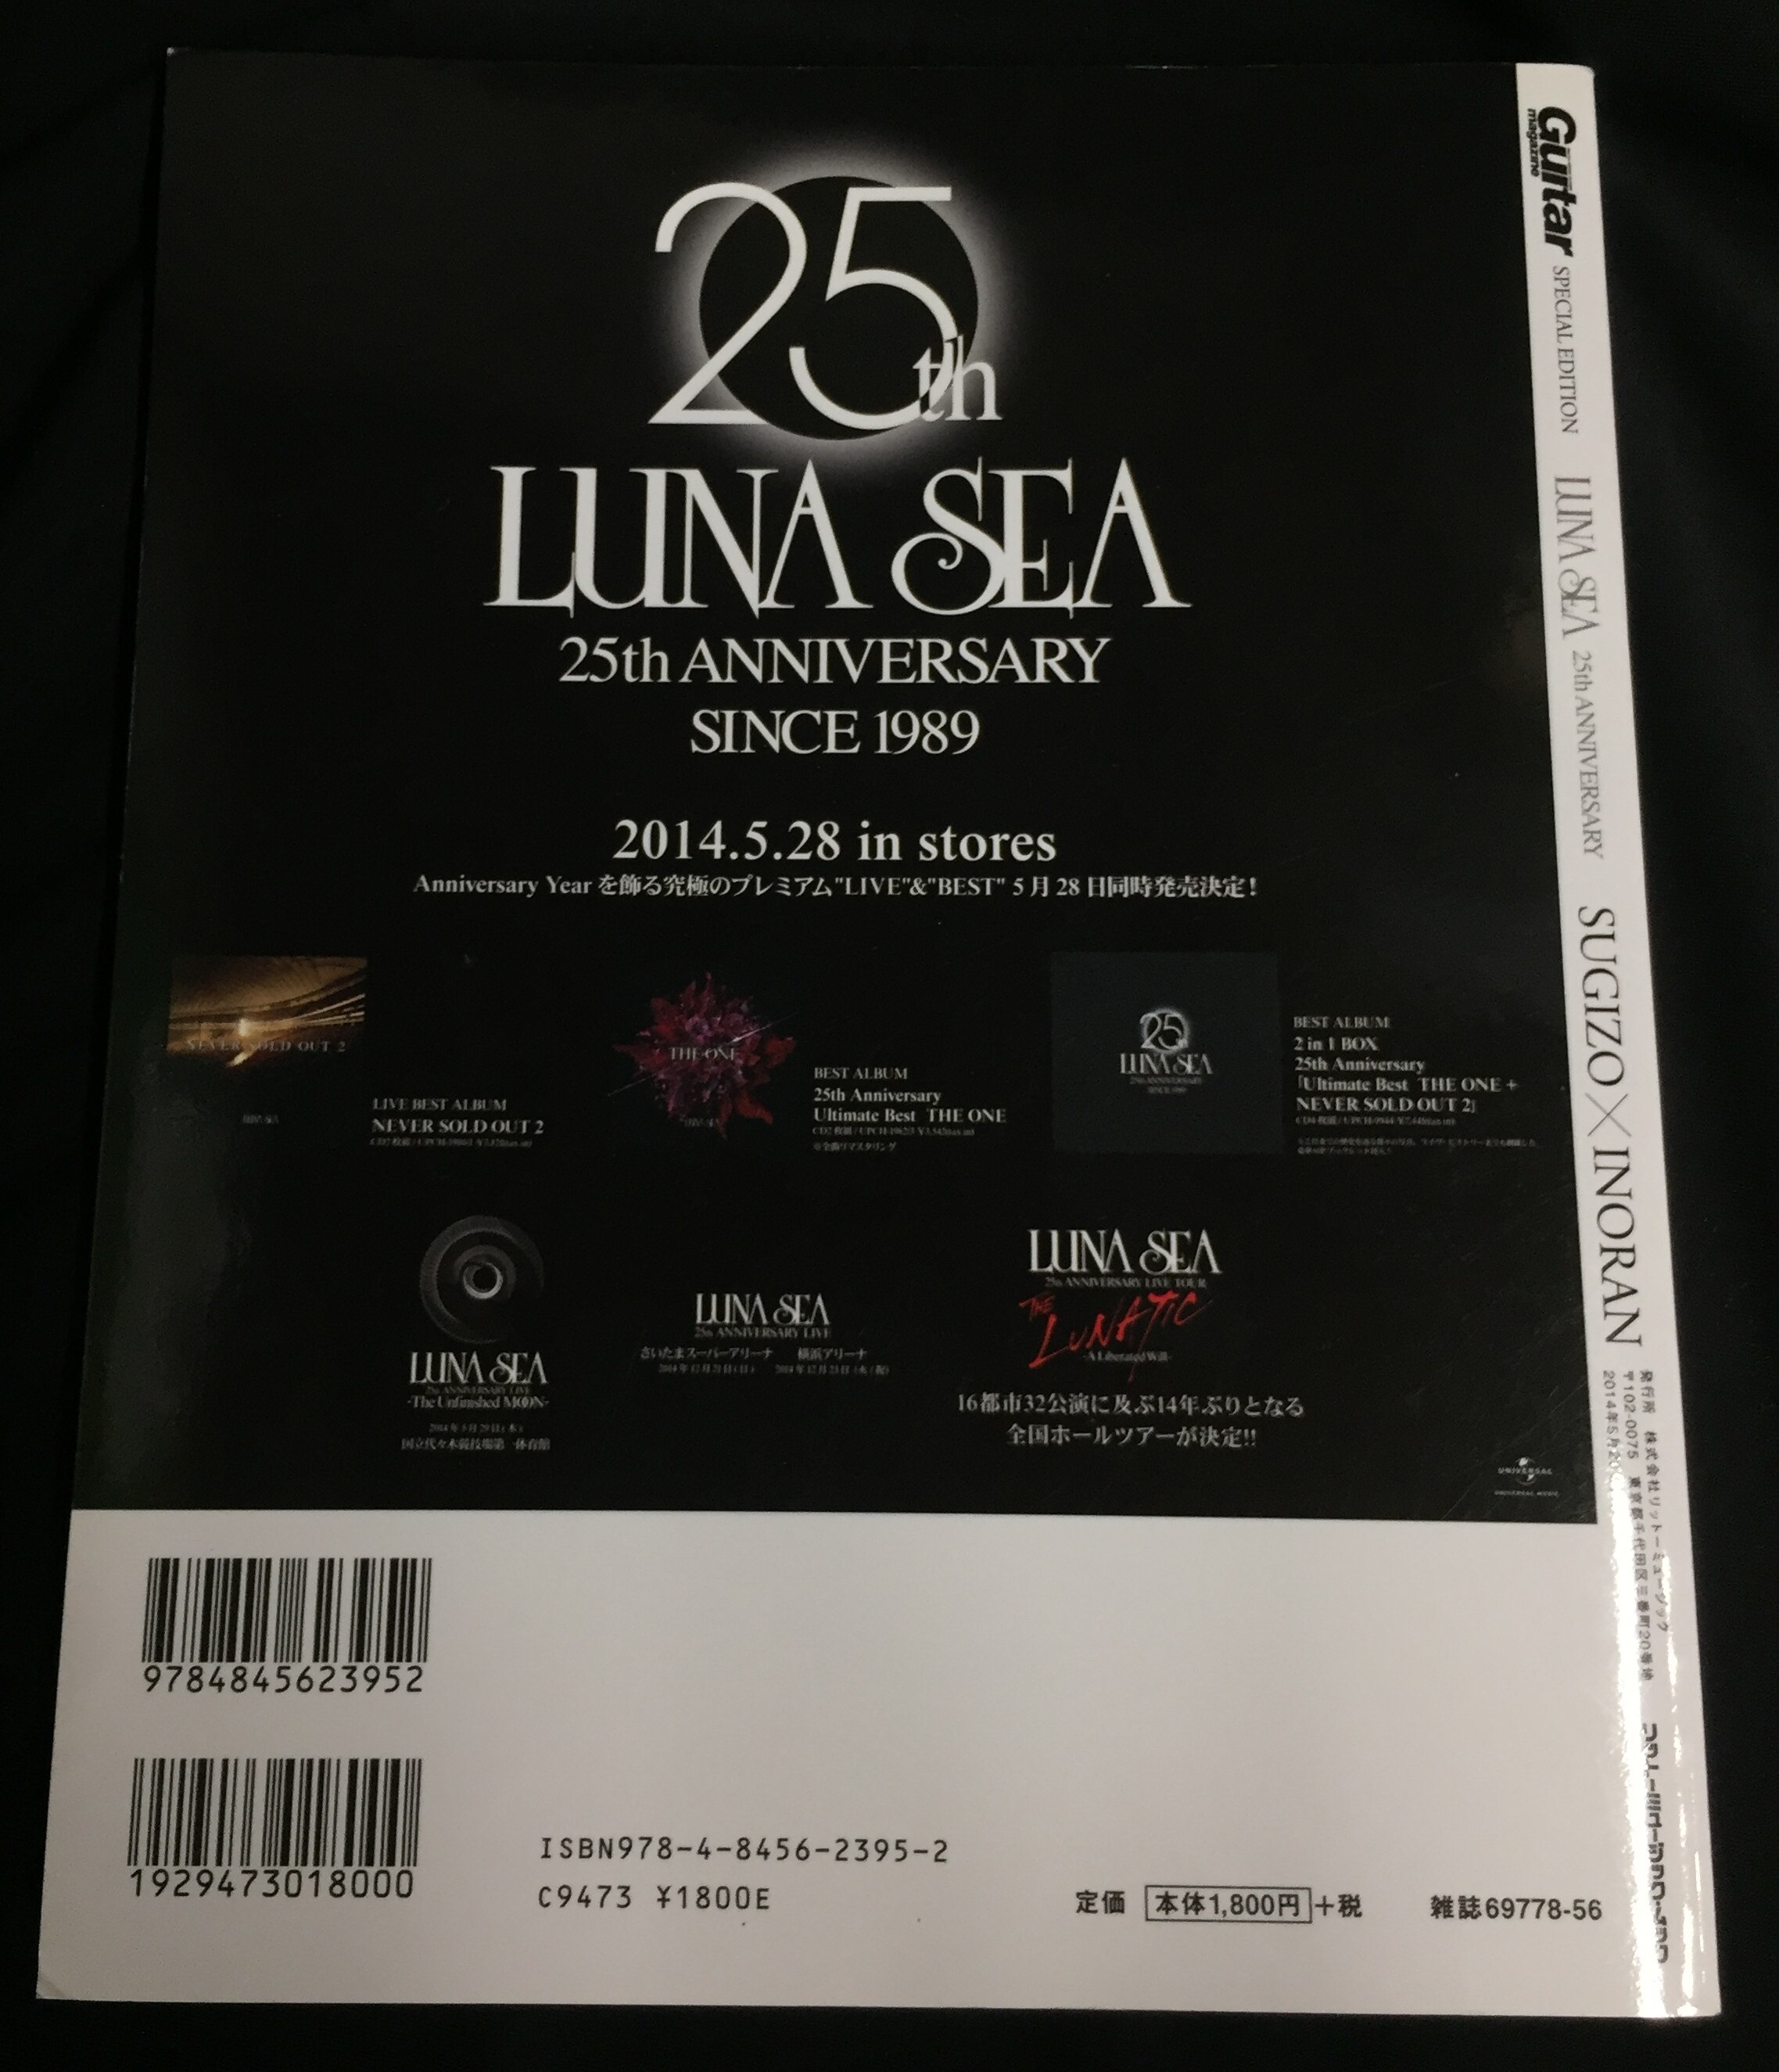 LUNA SEA Guitar magazine SPECIAL EDITION LUNA SEA 25th ANNIVERSARY